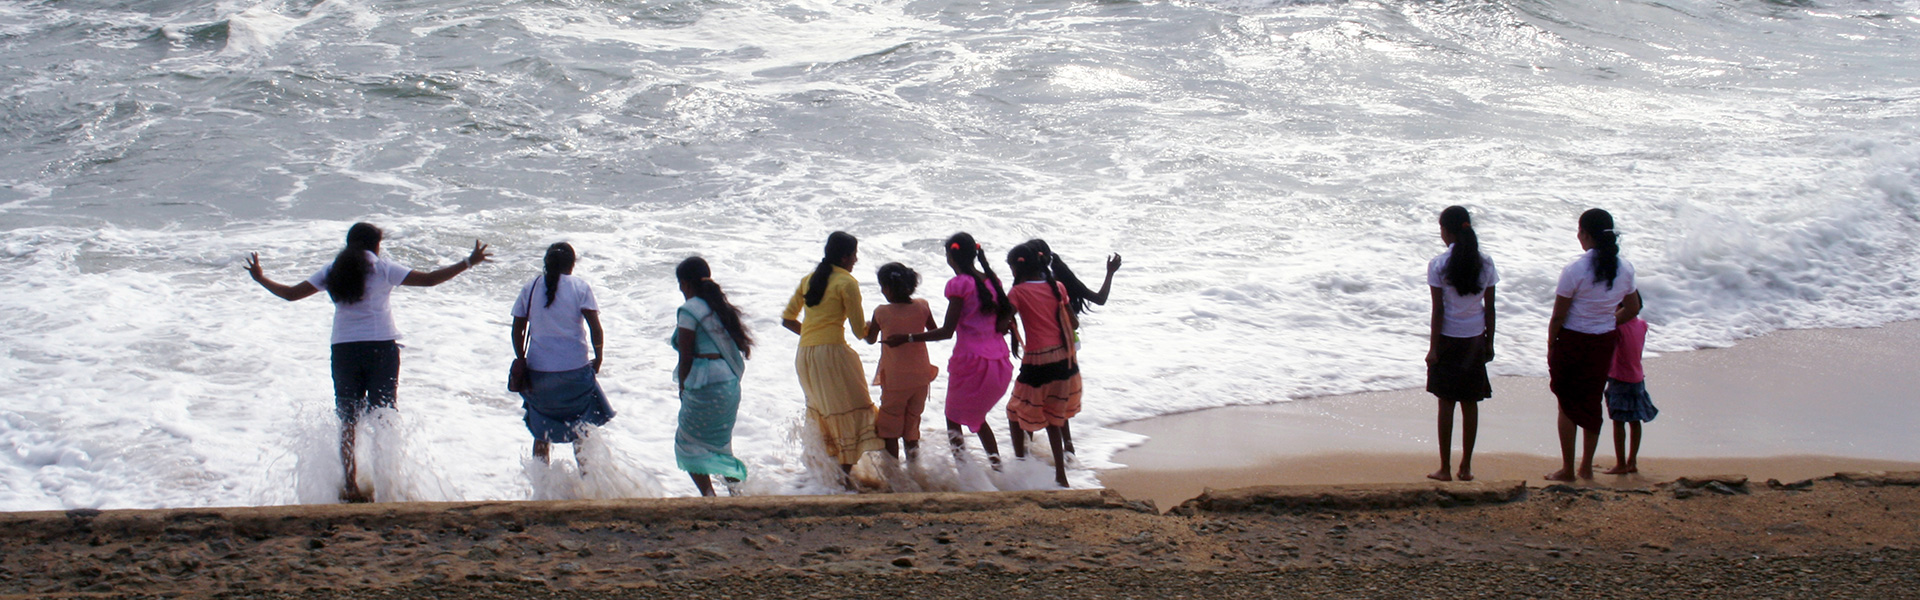 sri-lanka-women-on-beach